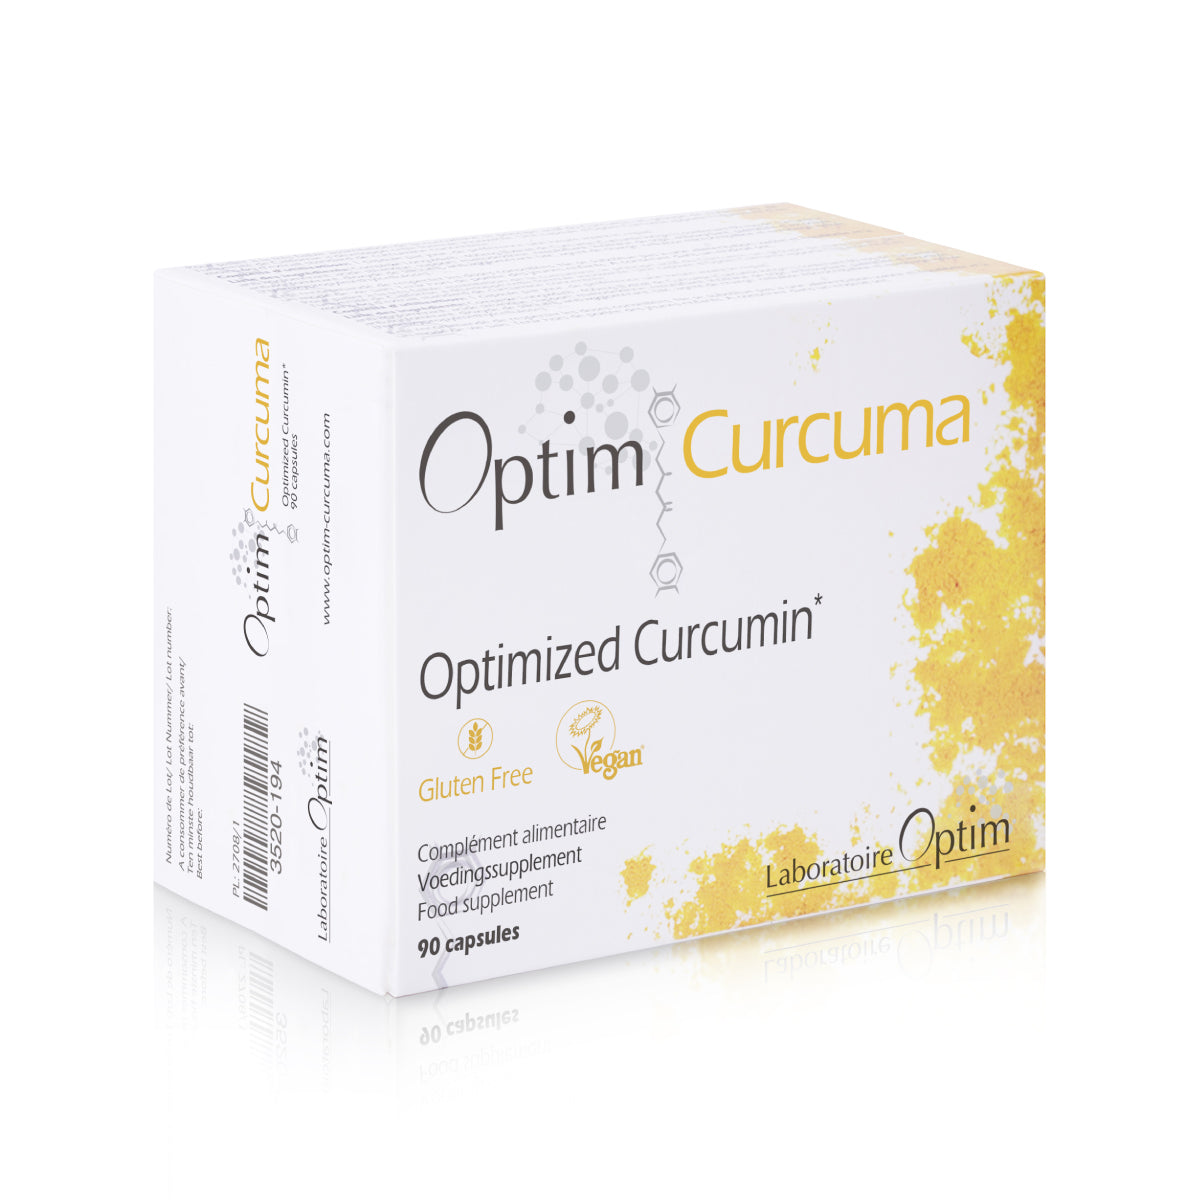 Optim Curcuma 30 or 90 capsules